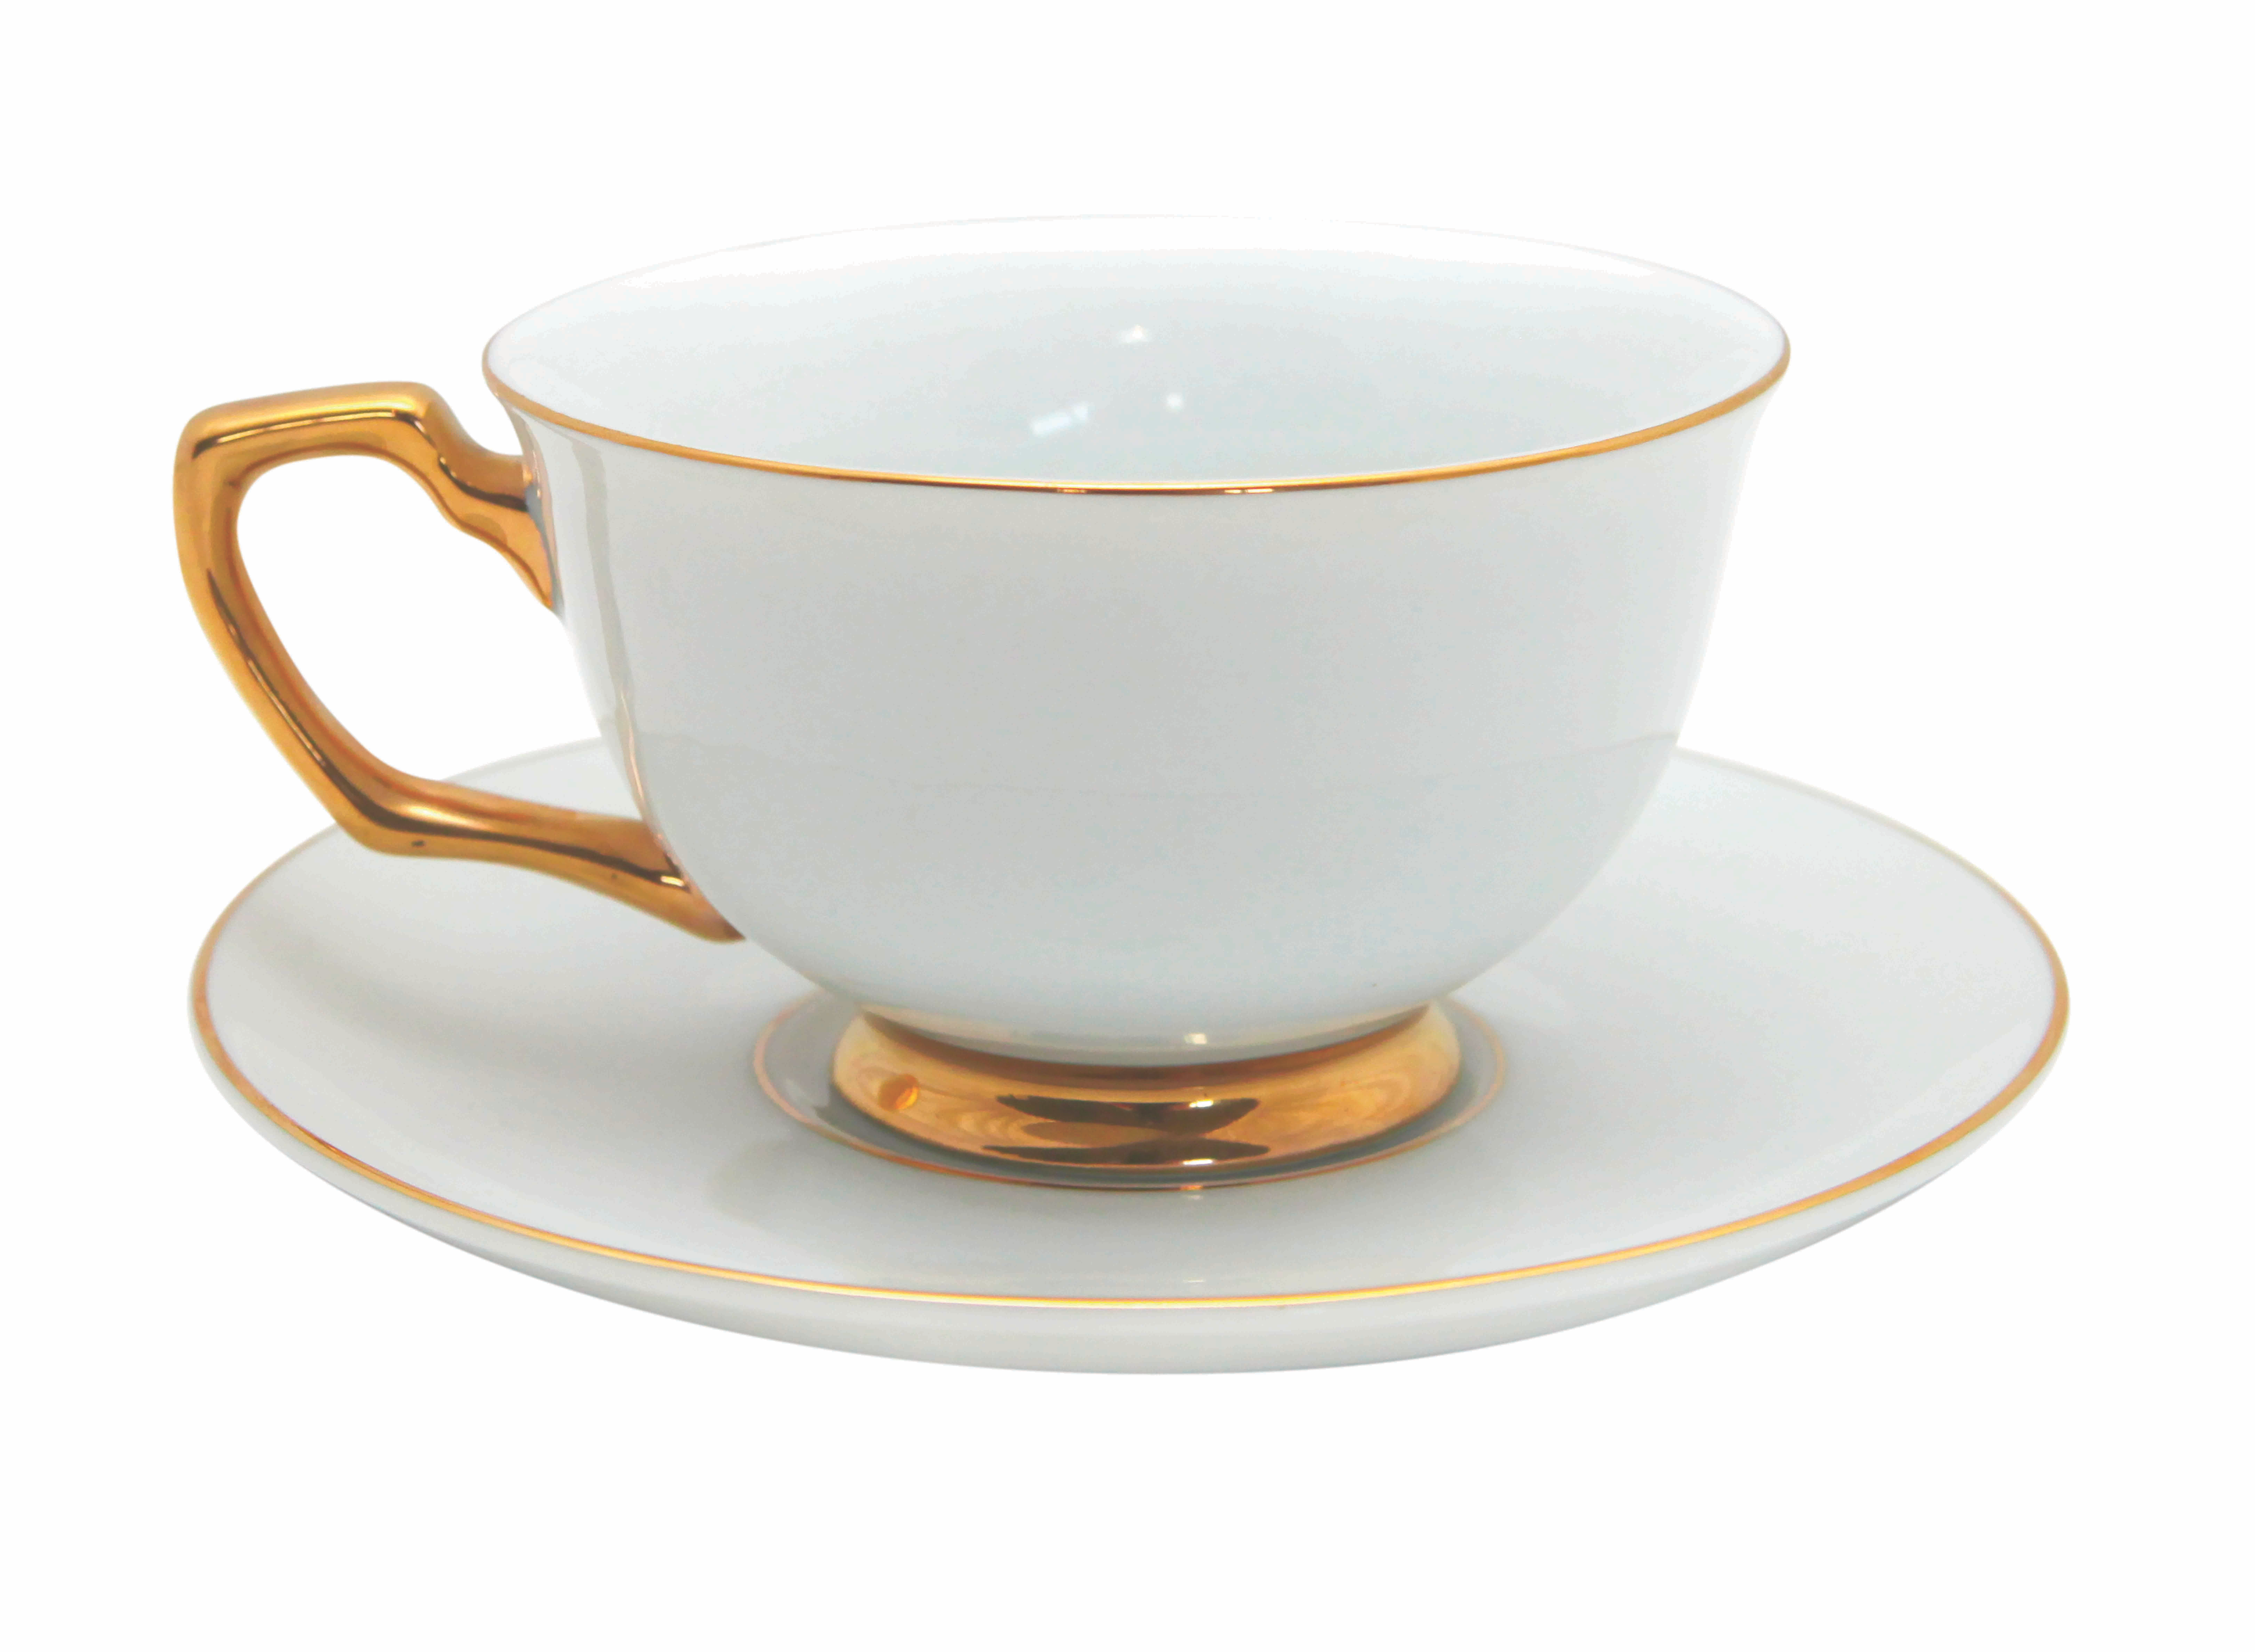 Png Tea Cup And Saucer Hdpng.com 3890 - Tea Cup And Saucer, Transparent background PNG HD thumbnail